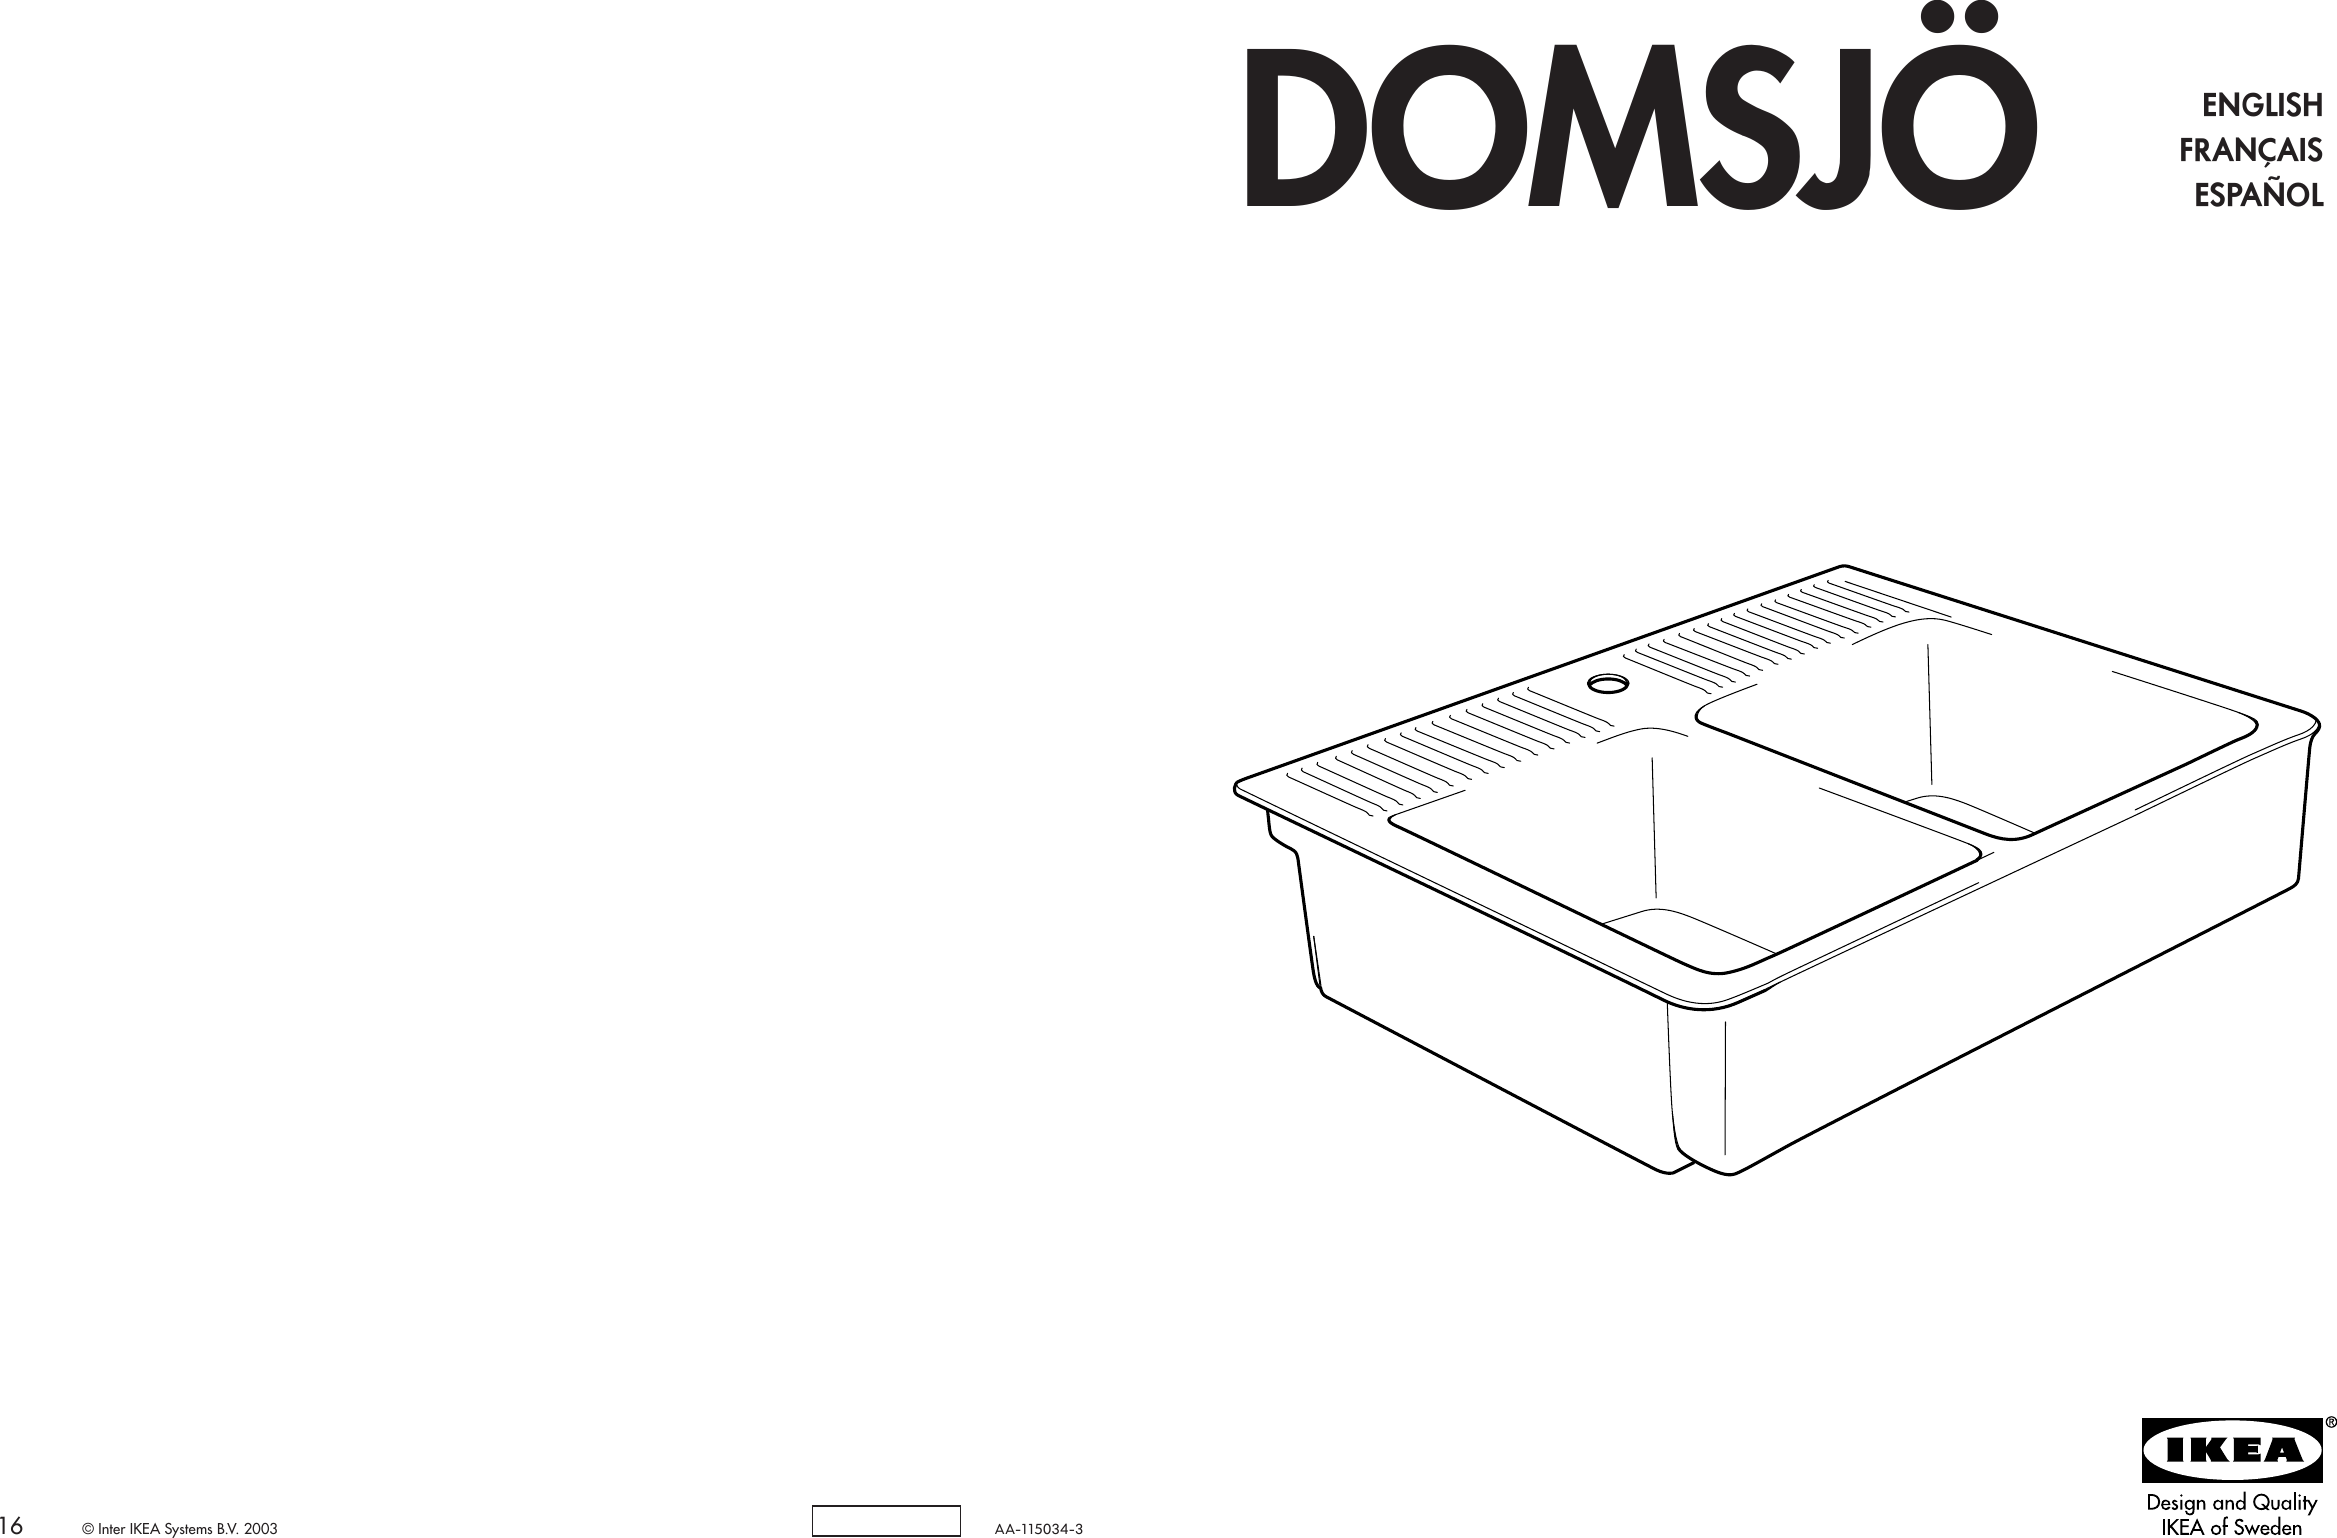 IkeaDomsjaDoubleBowlSink3658X27AssemblyInstruction.1264115023 User Guide Page 1 